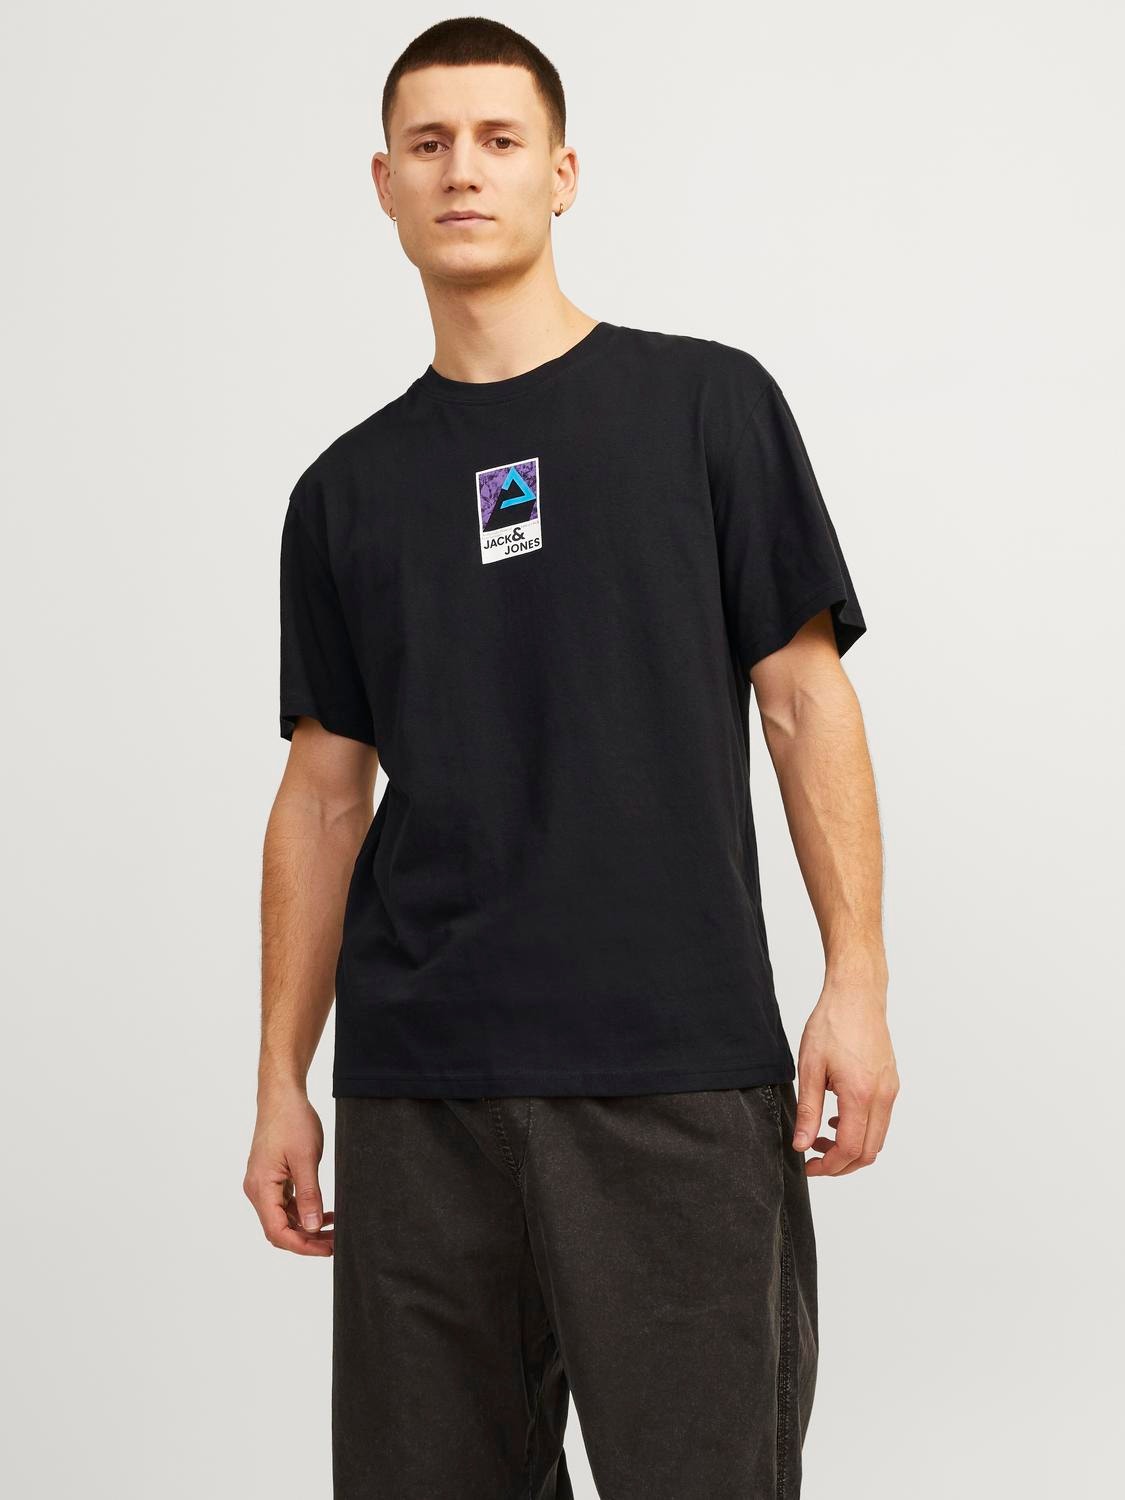 Jack & Jones Gedruckt Rundhals T-shirt -Black - 12256682